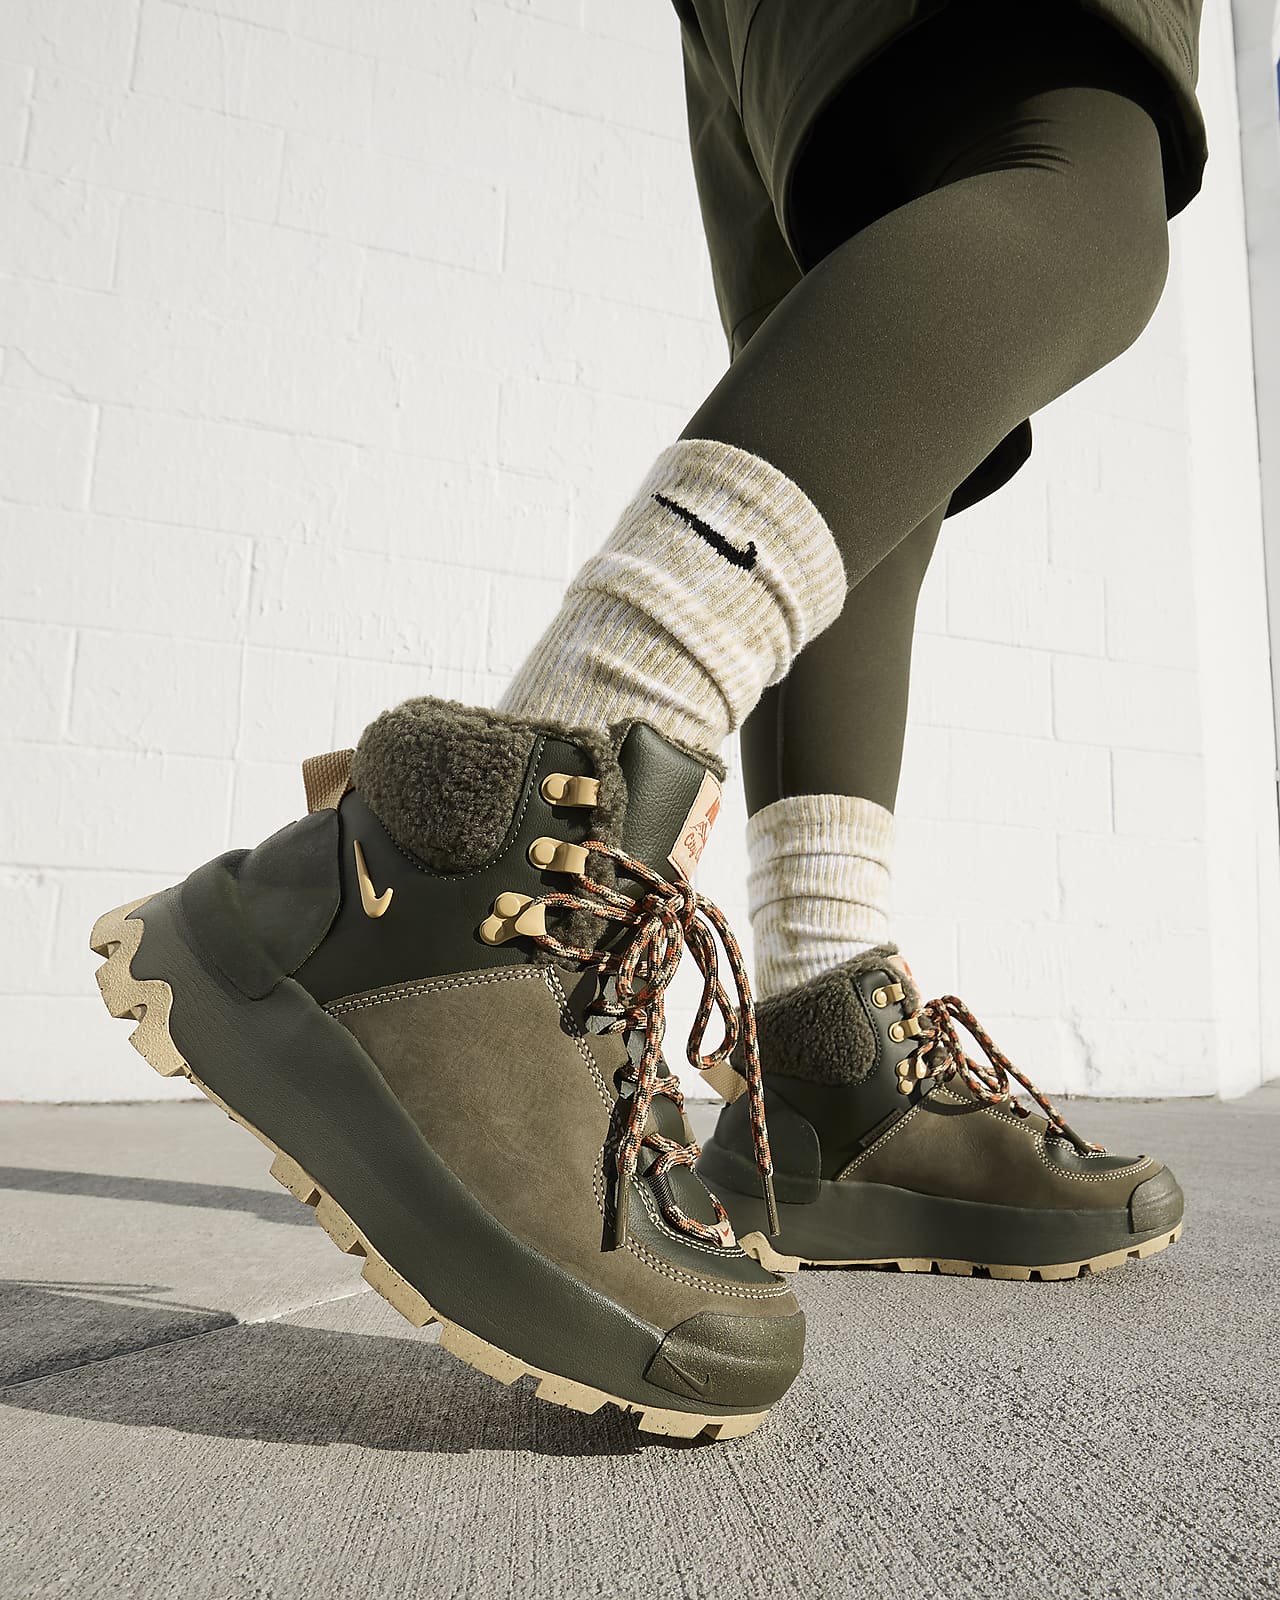 Women's Weatherproof & Water Resistant Boots & Shoes